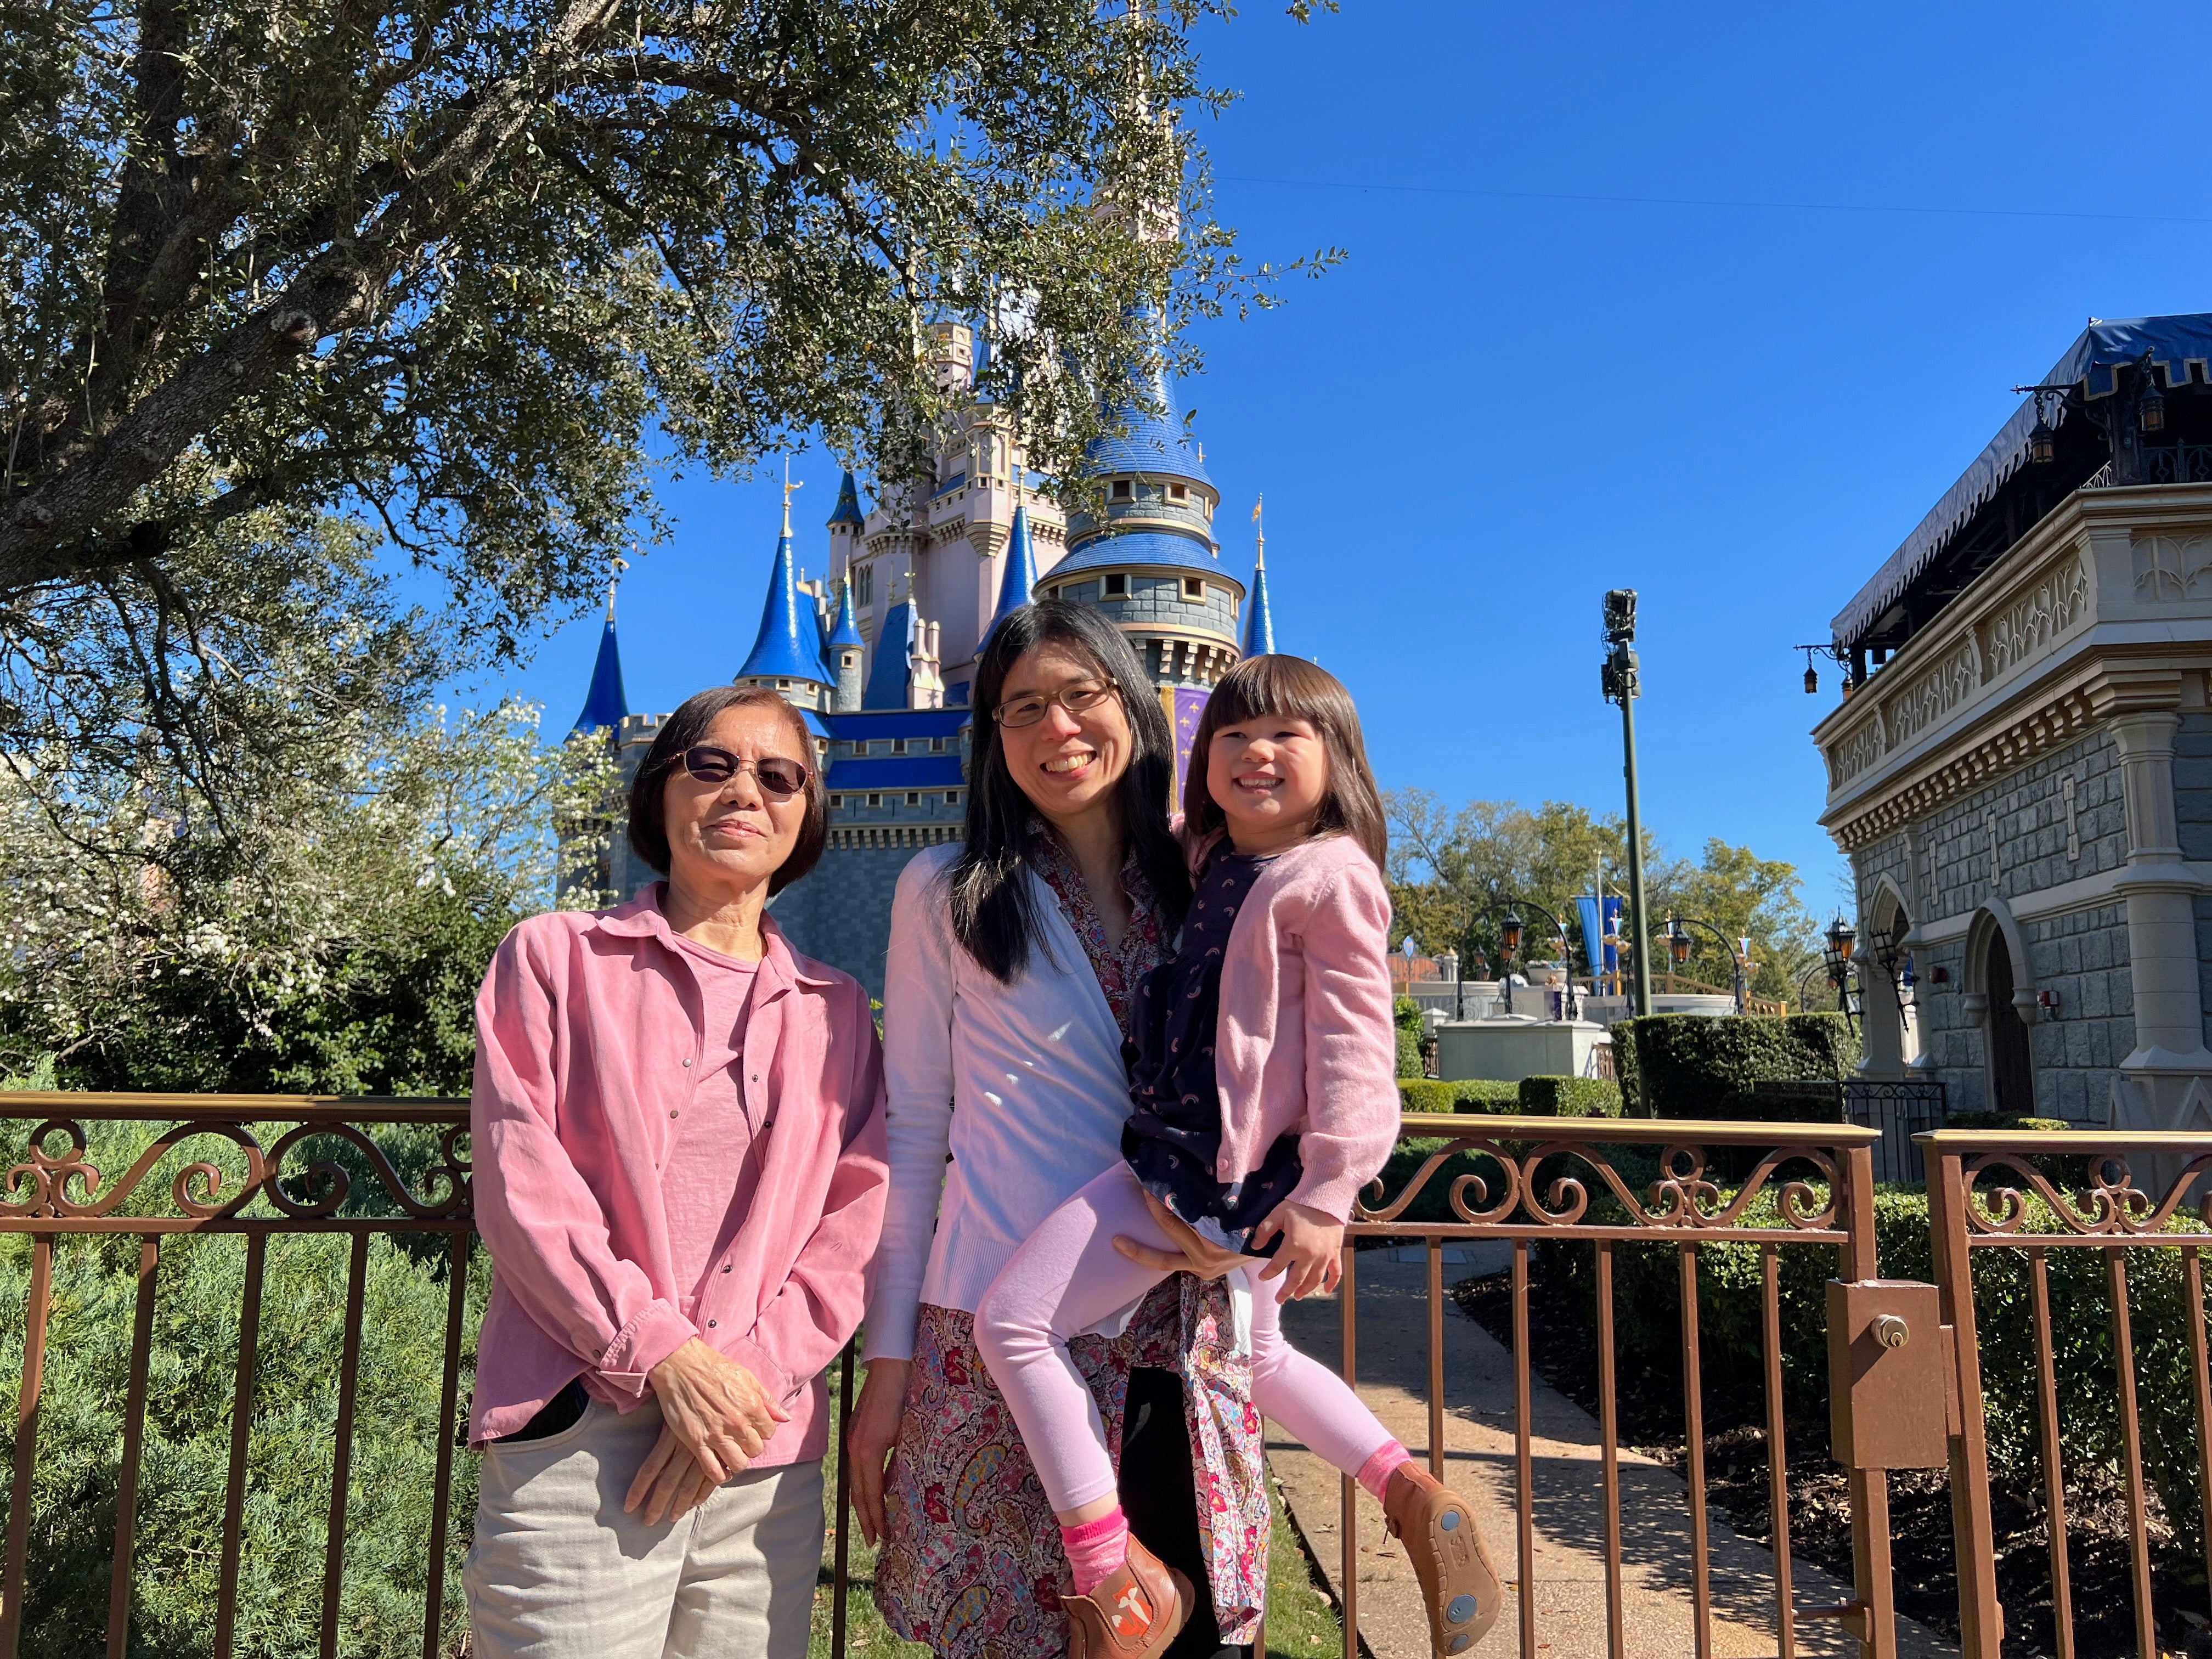 The family at Disney World, Orlando